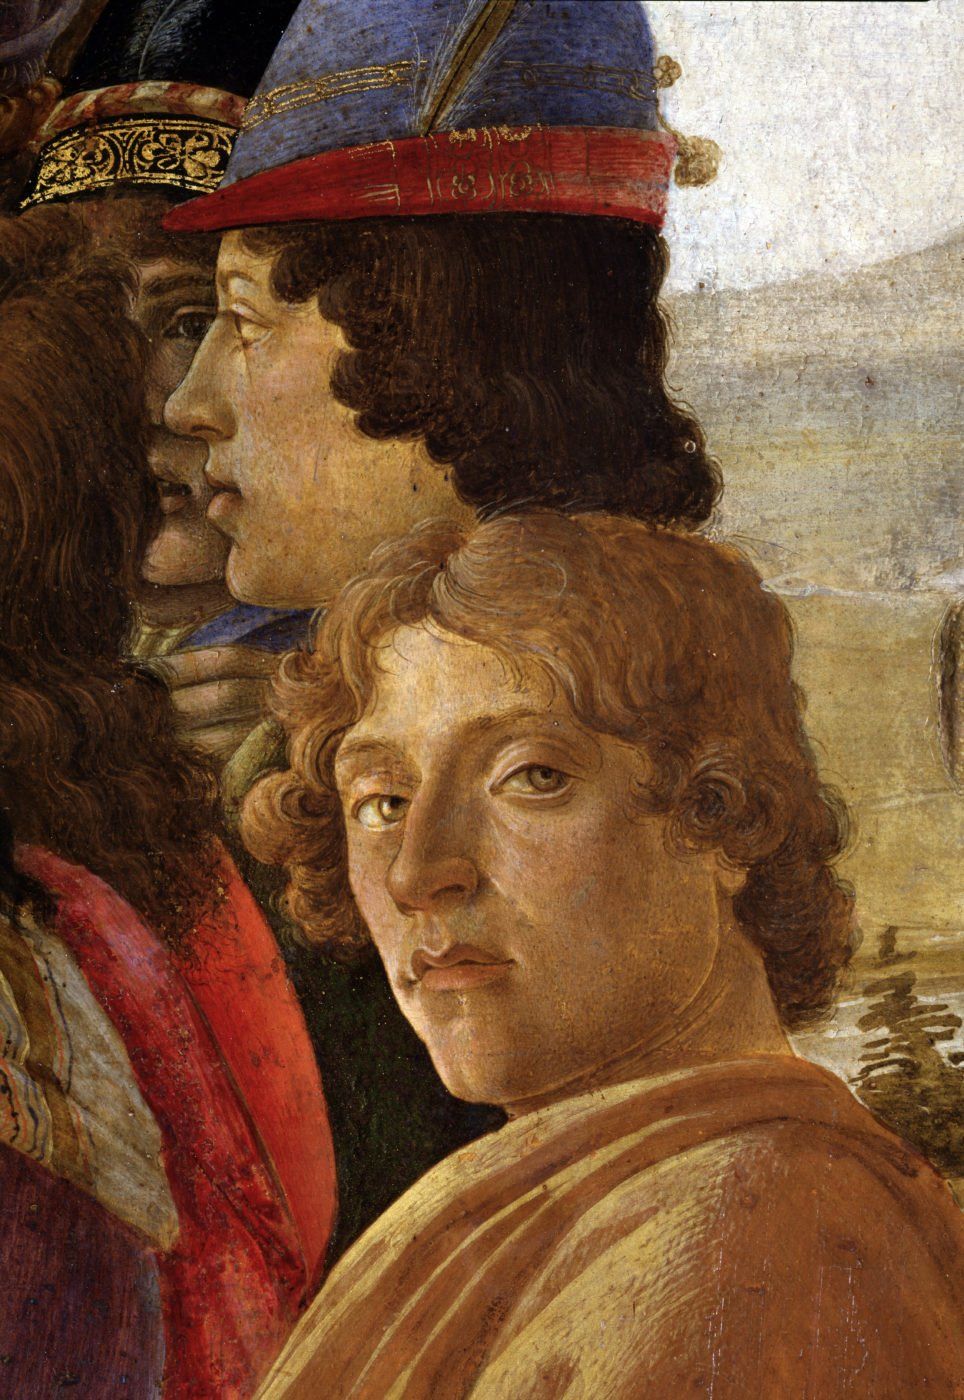 L'adoration des rois - Sandro Botticelli